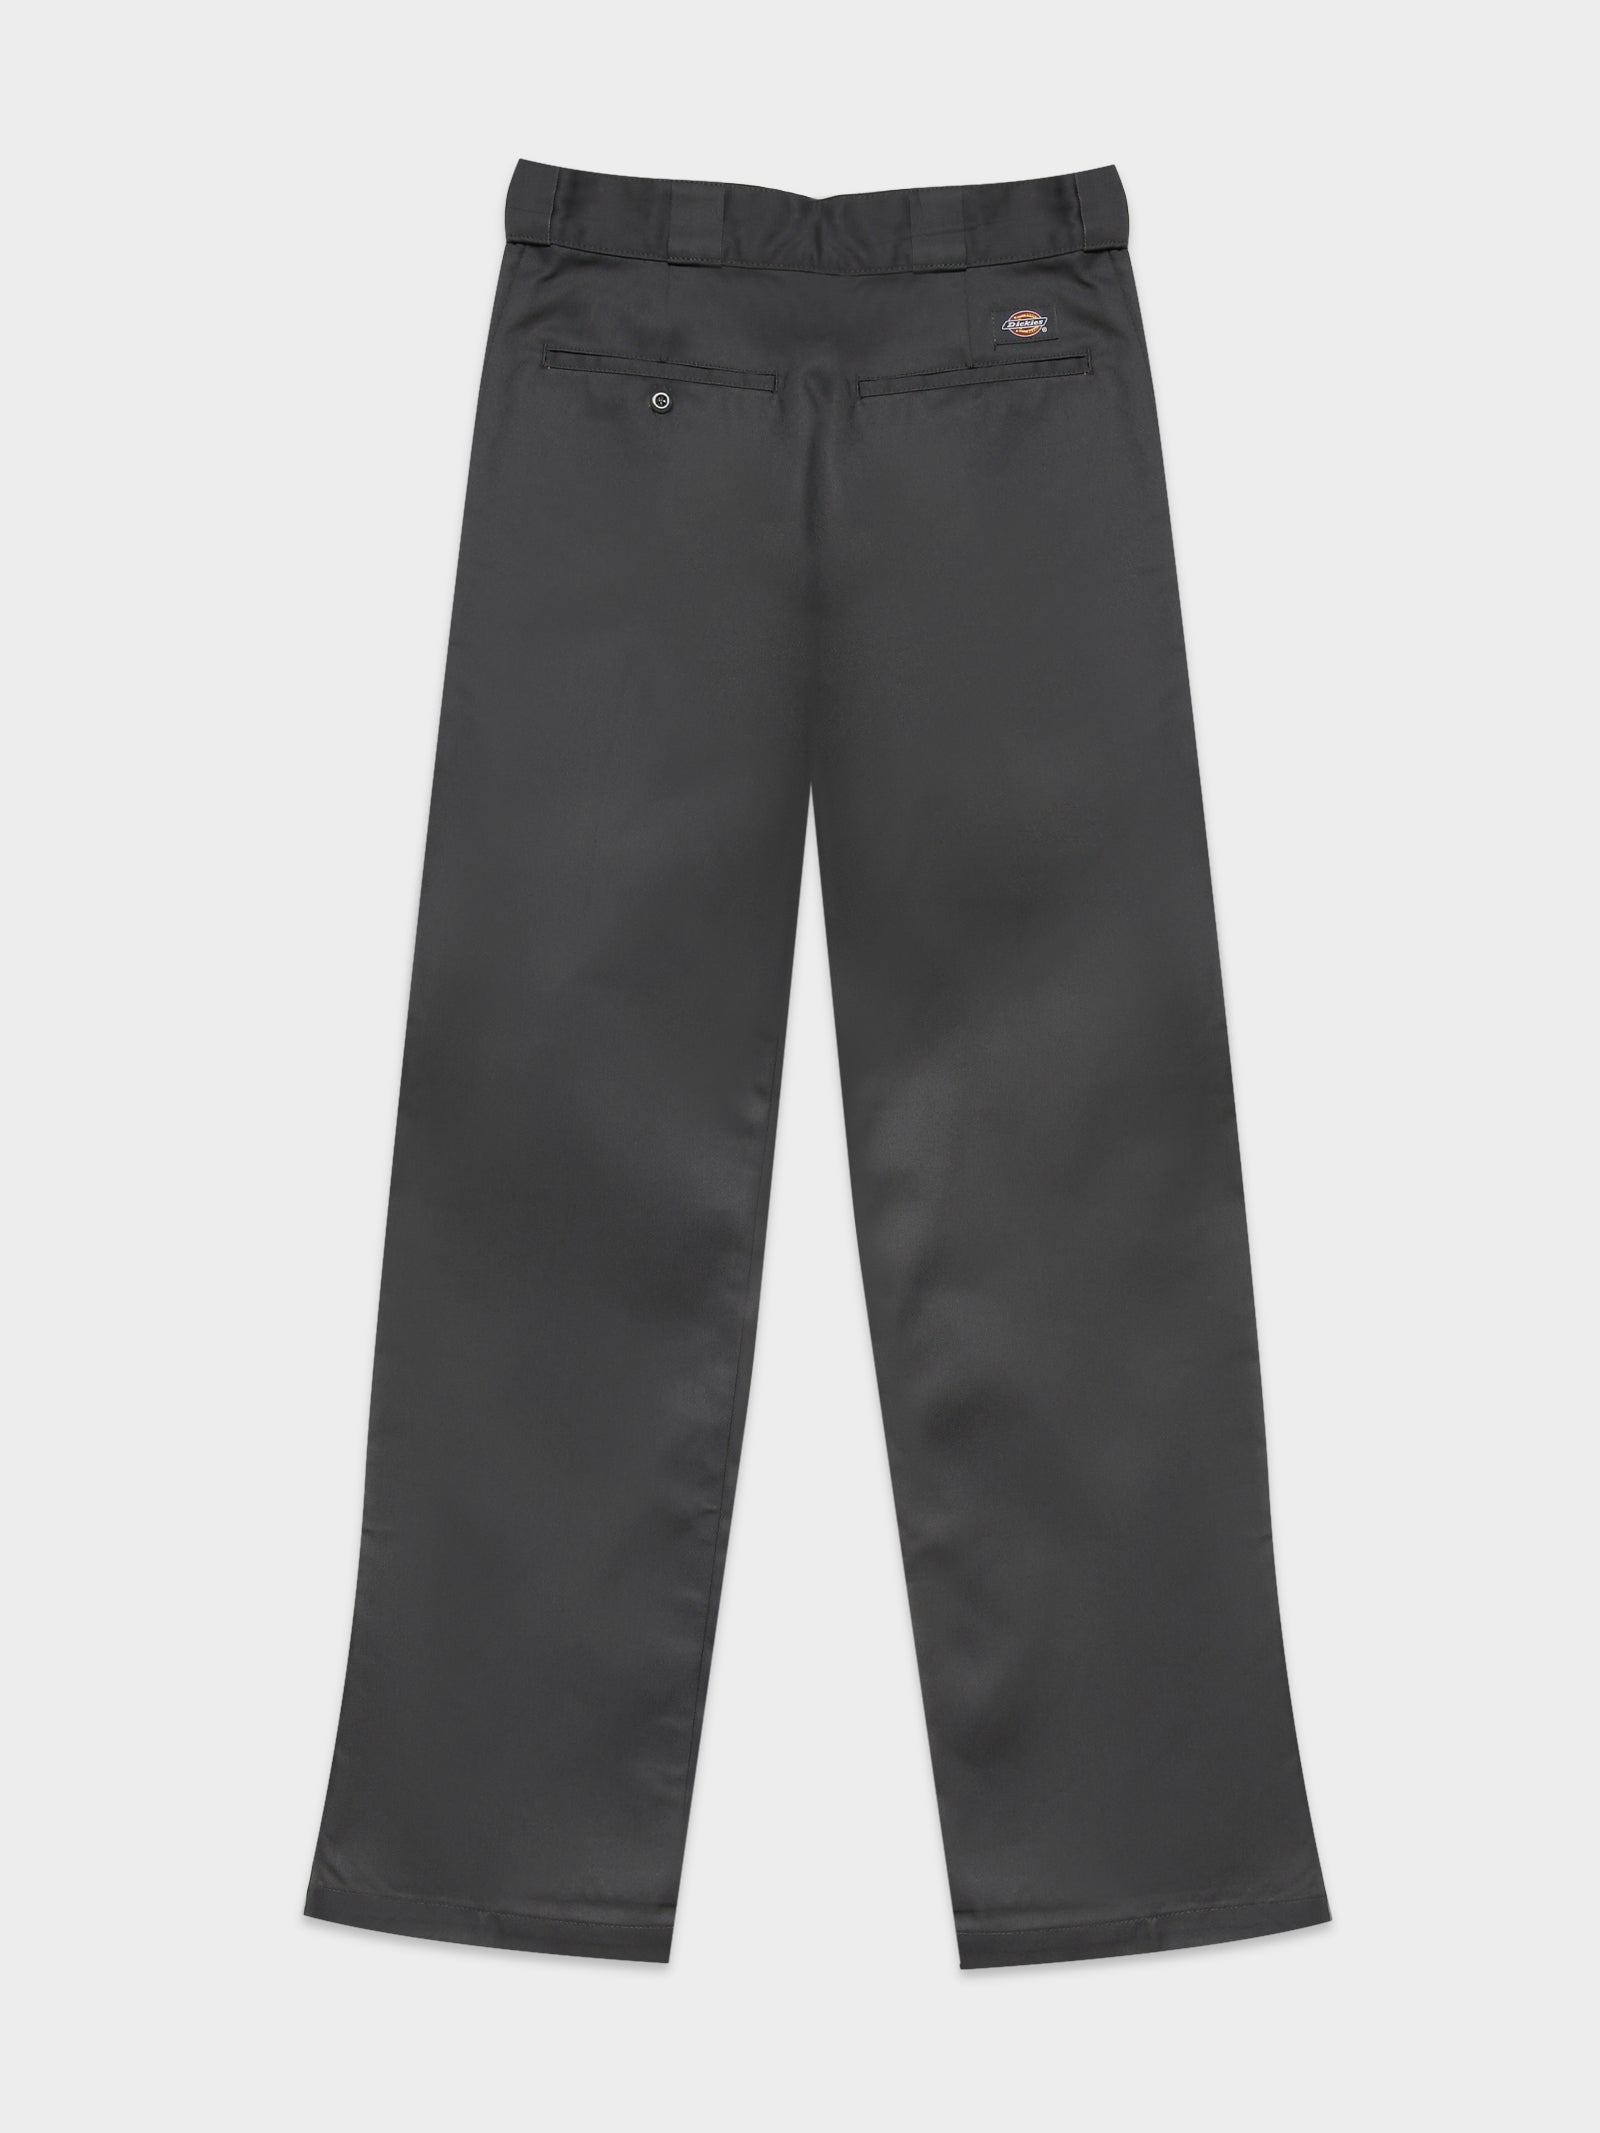 Dickies 874 Original Fit Work Pants Charcoal